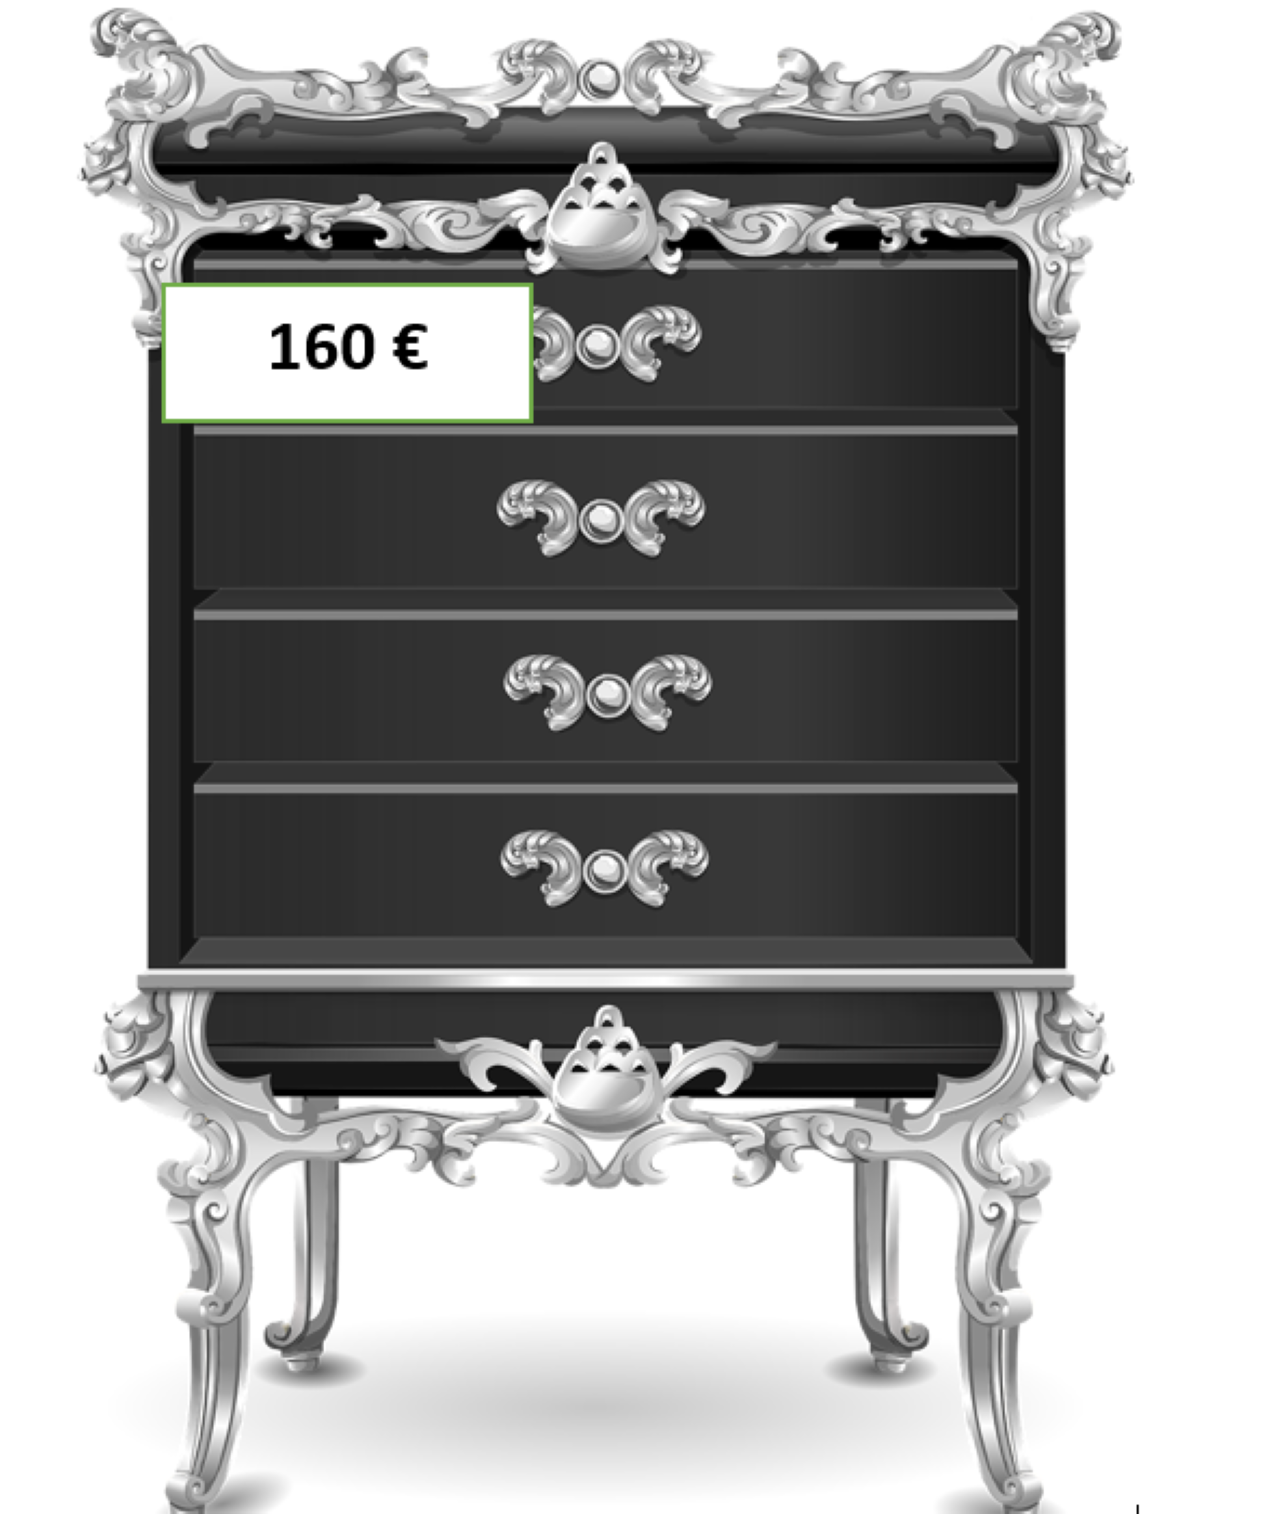 Slikom je prikazana crna komoda za 160 eura.